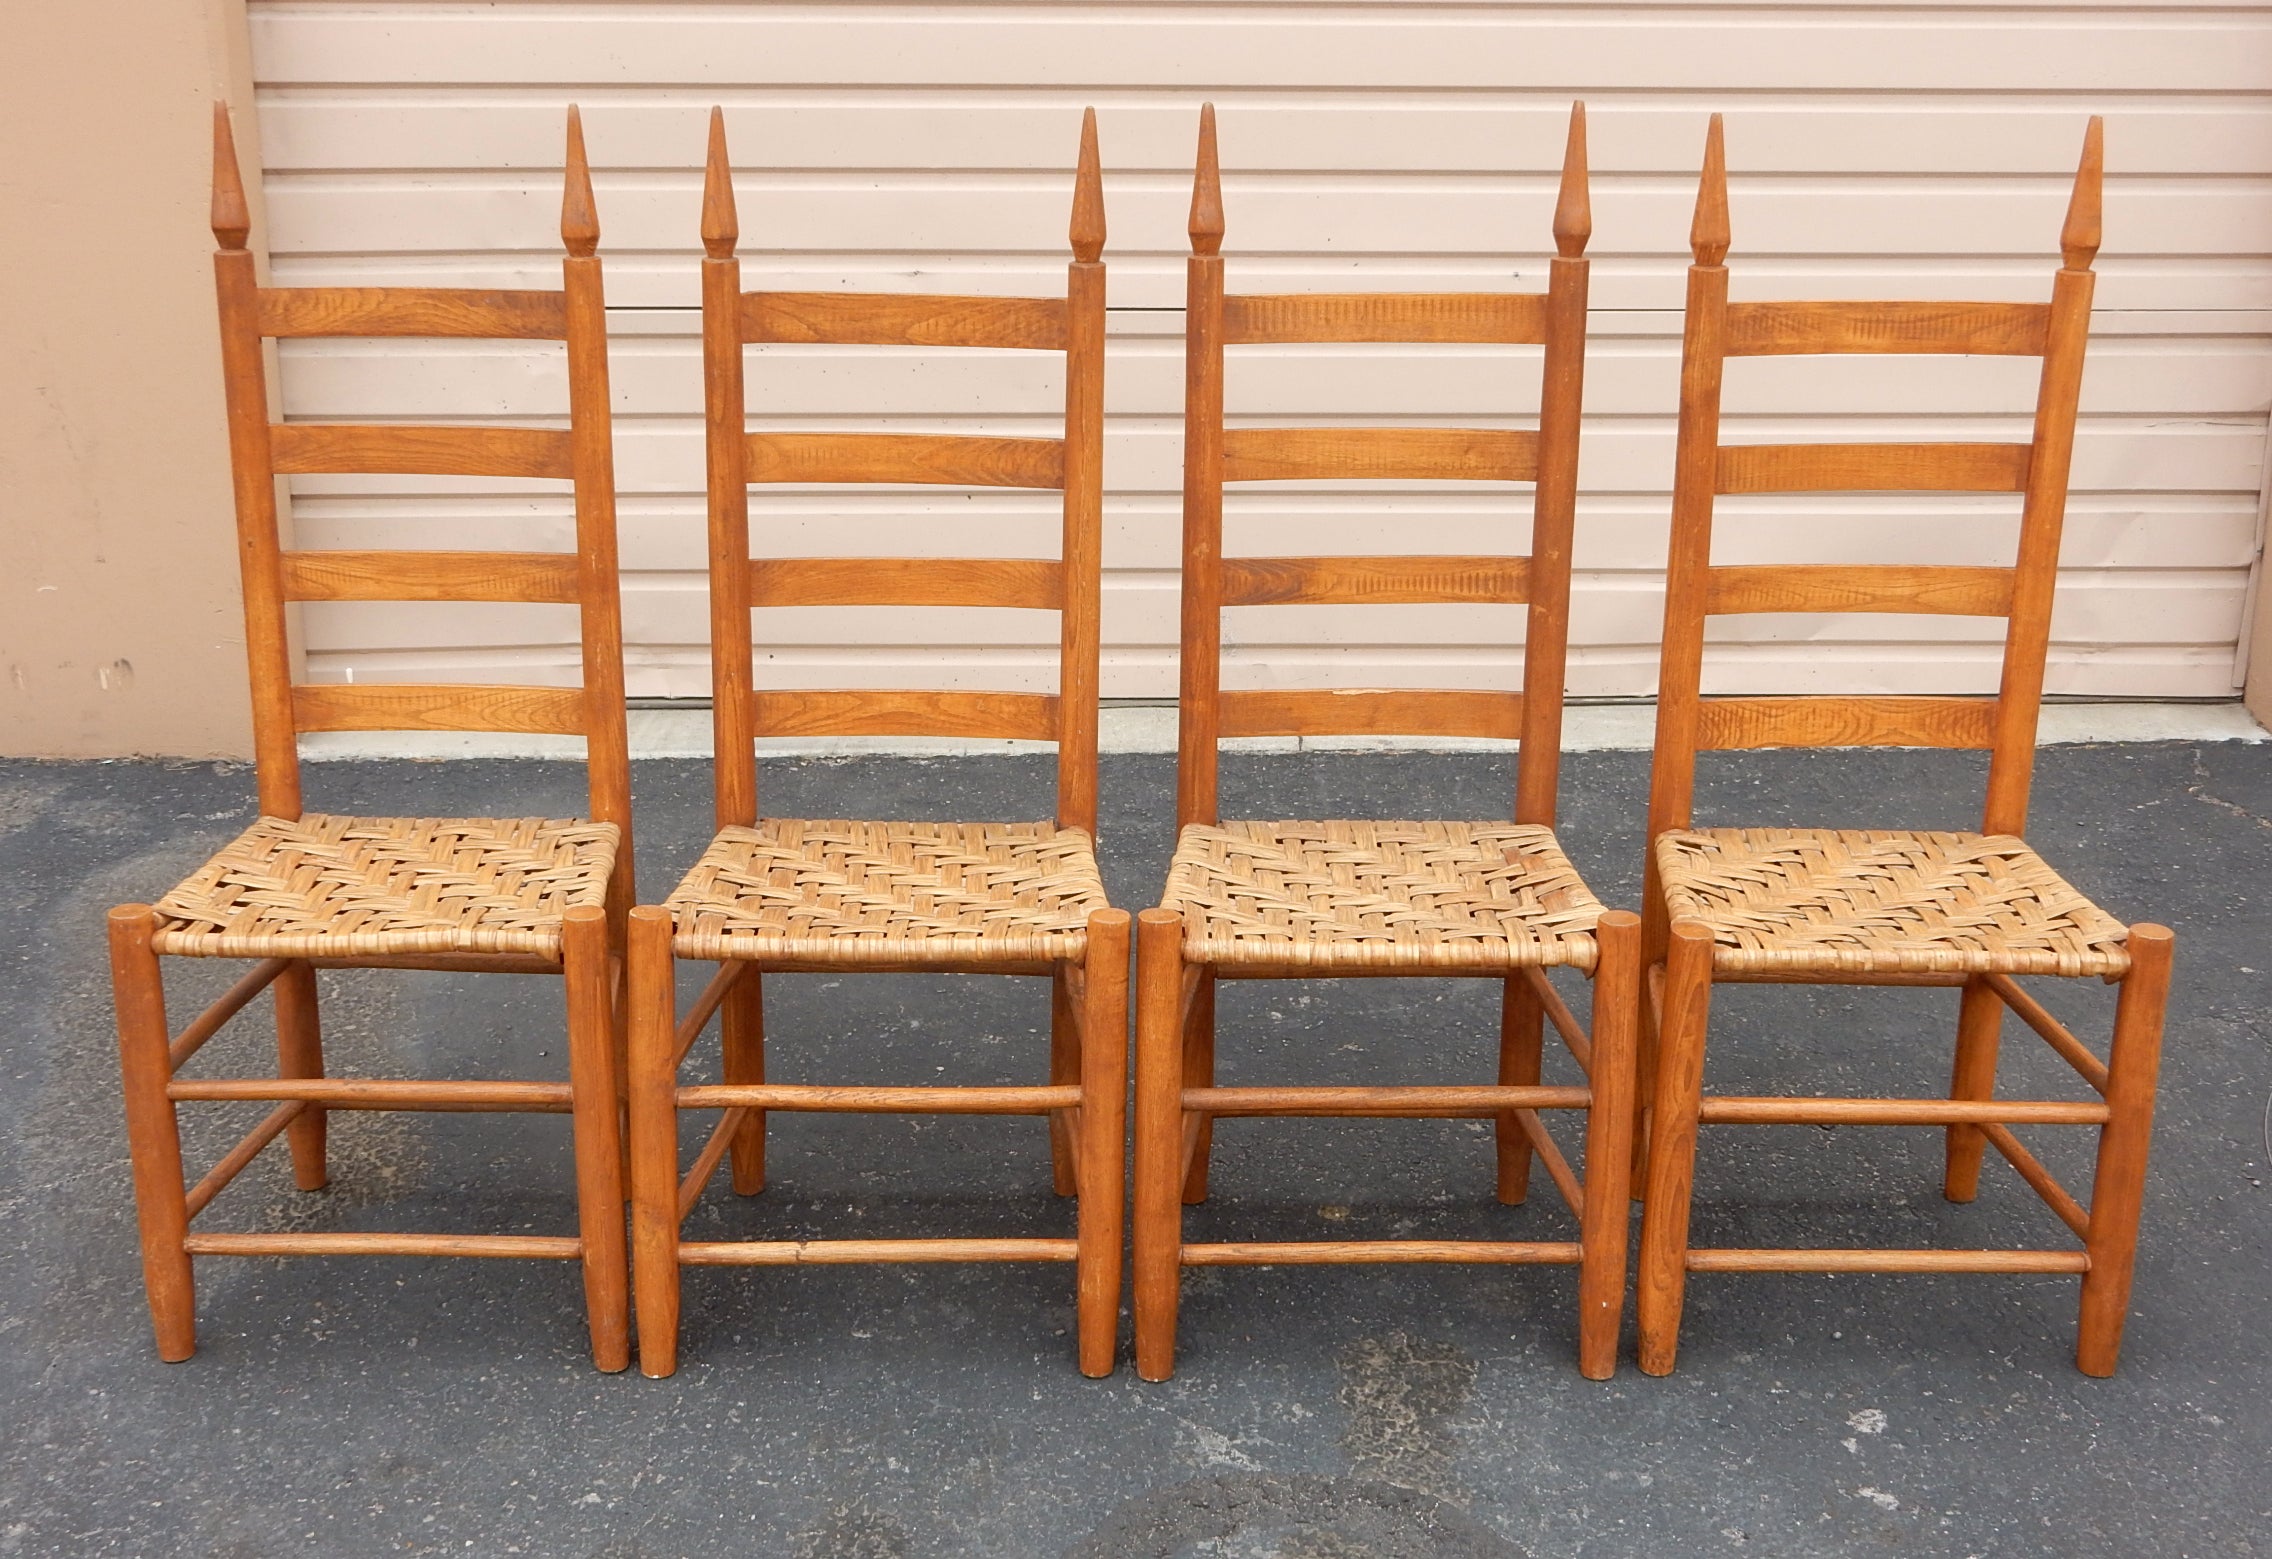 4 Stühle im Stil der Shaker-Ära aus massivem Eichenholz mit Leiterrücken.
Wir glauben, dass es sich dabei um eine Version von Anfang 1900 handelt. 
Die geflochtenen Binsen-Sitzmöbel haben eine schöne, warme, gealterte Patina, aber keine